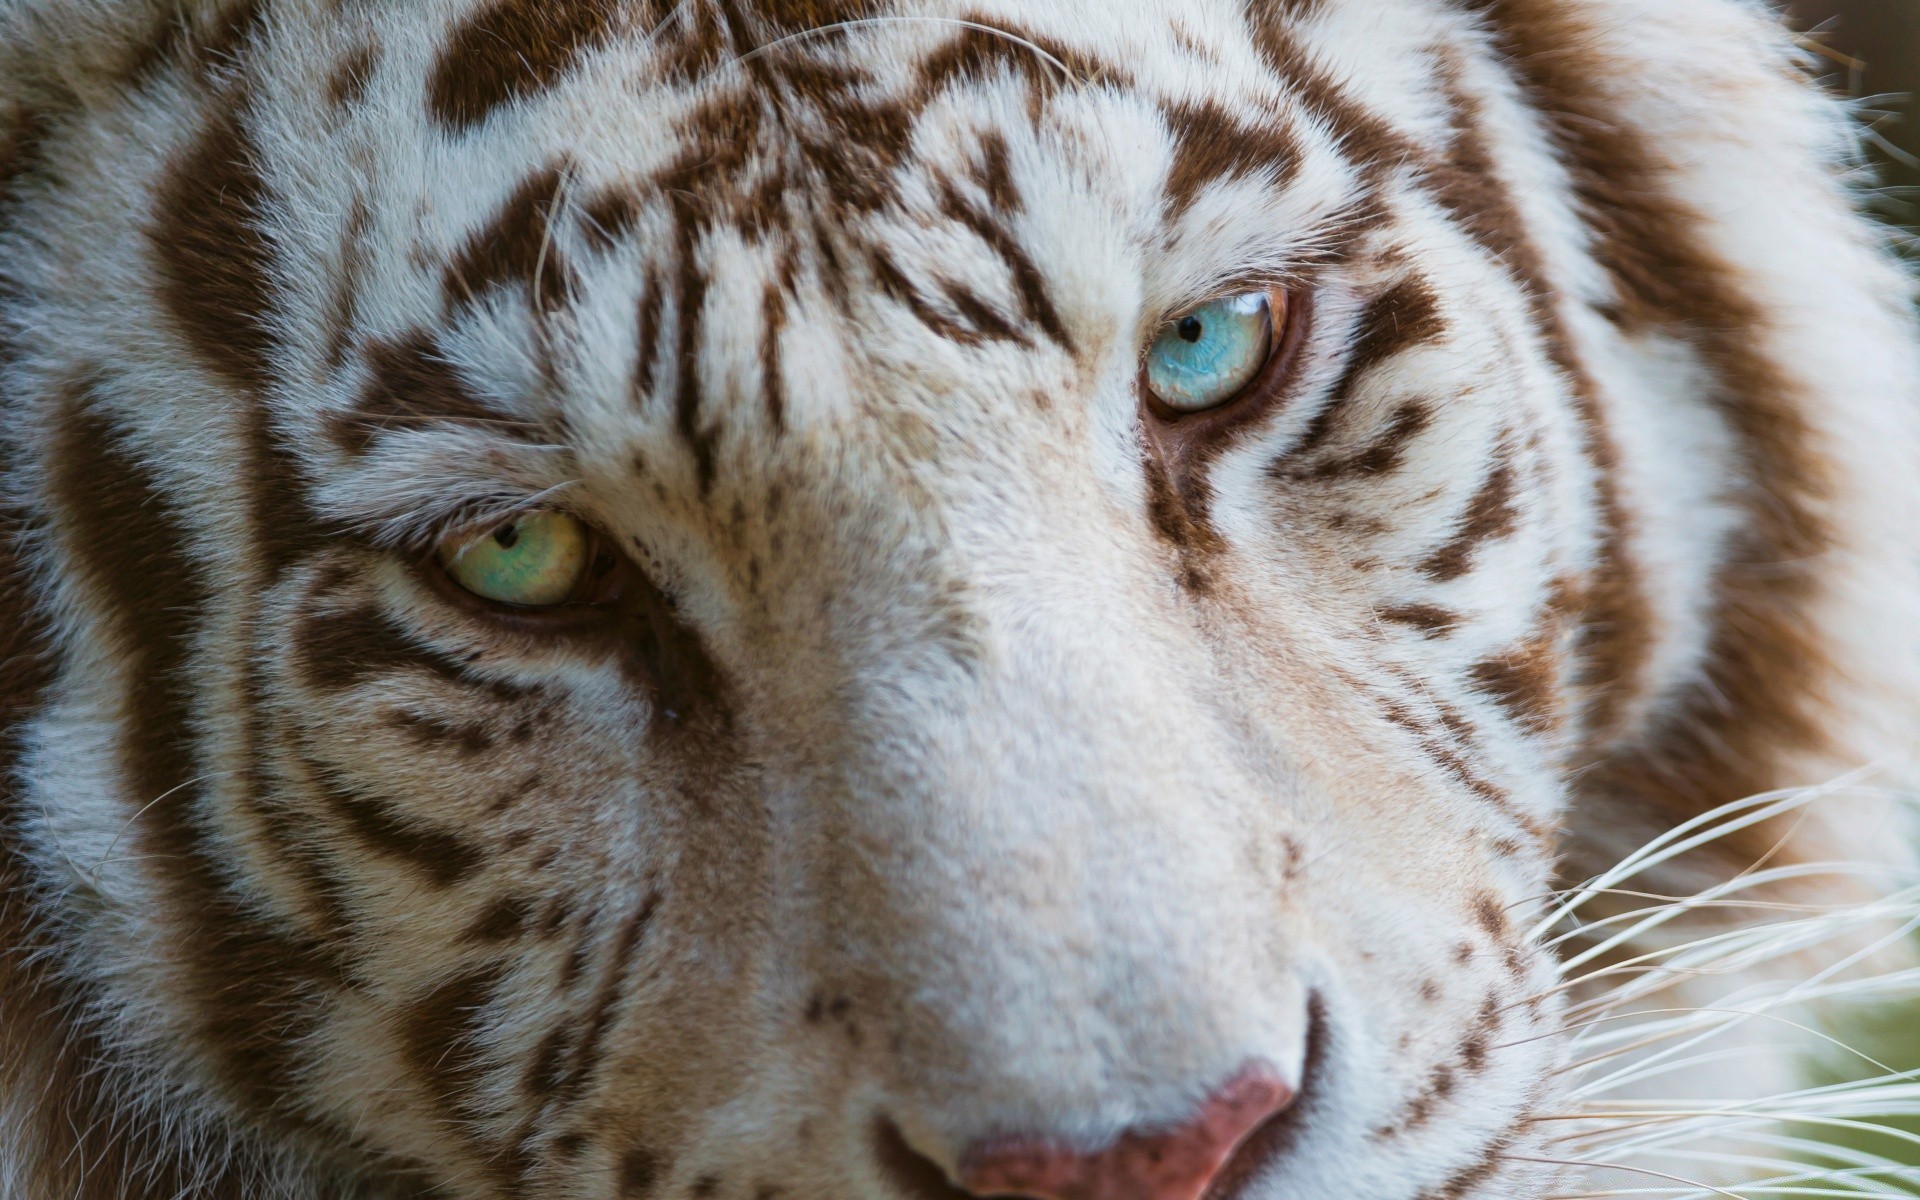 животные дикой природы животное тигр хищник зоопарк мех большой природа полоса кошка глаз дикий портрет млекопитающее мясоед охотник глядя глава злой сибирский